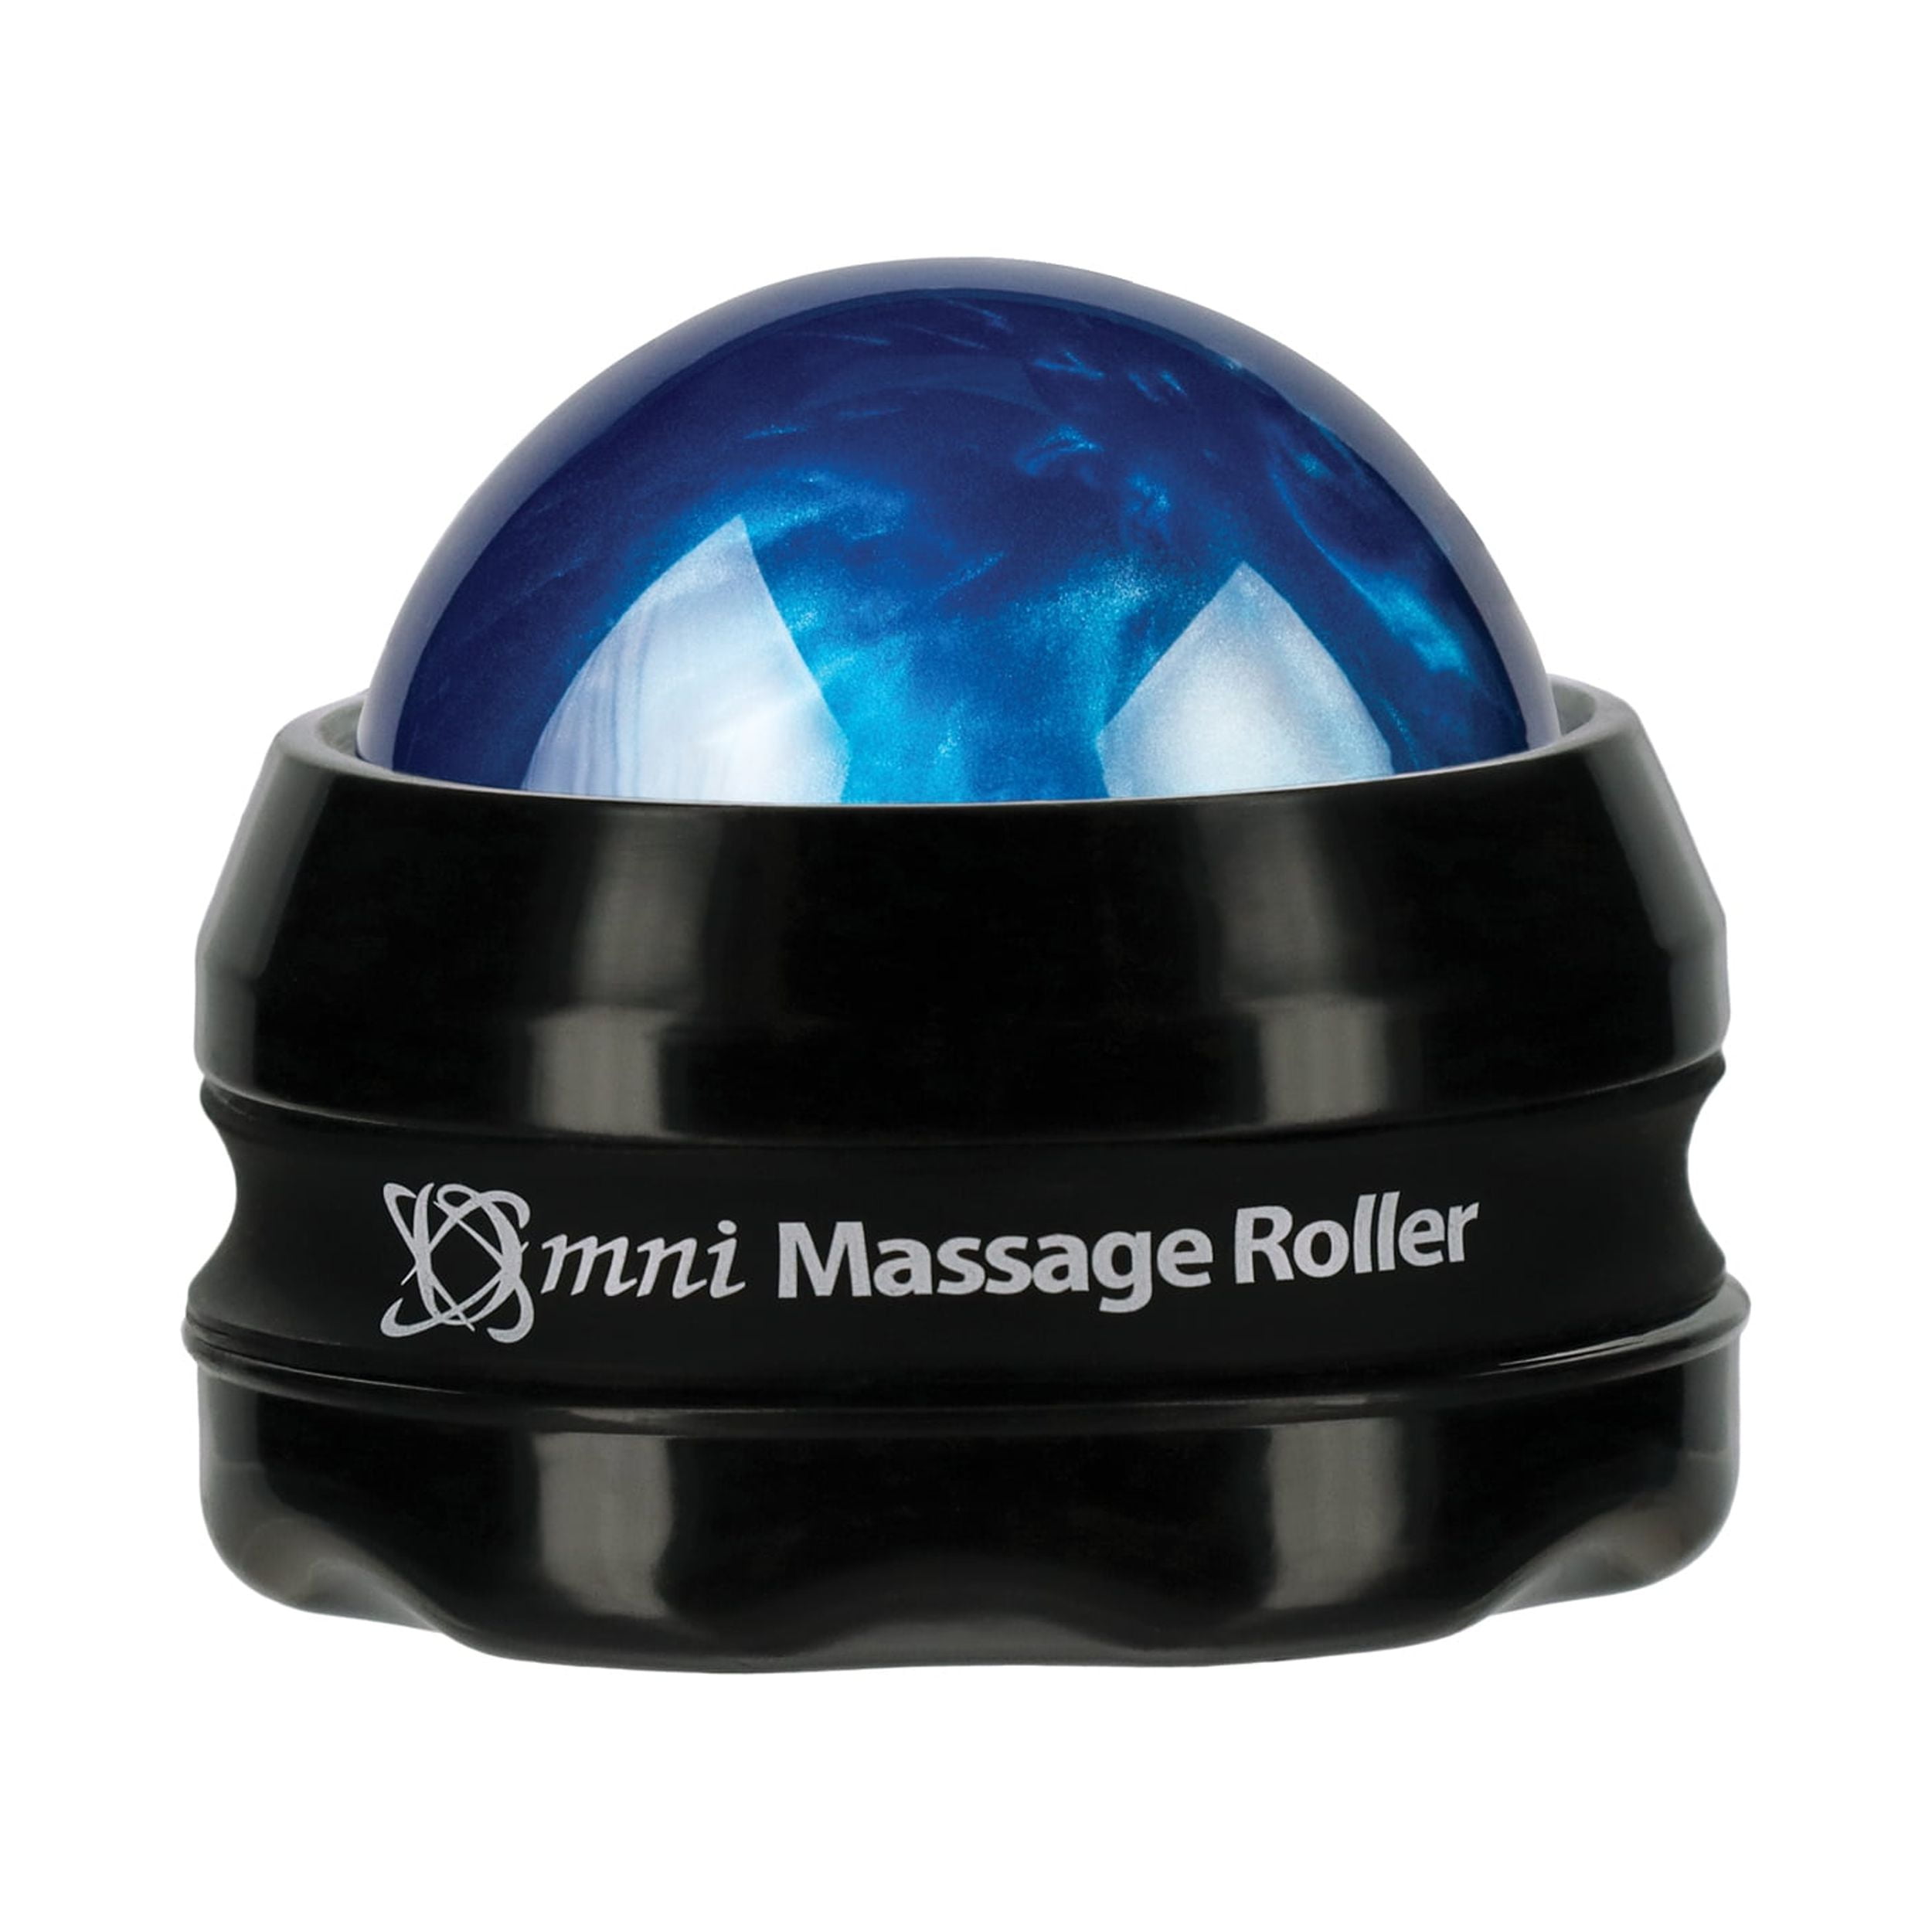 NeckBud Massage Roller|Neck Bud Massage Roller|Blesnia Rolneck Neck  Massager, Handheld Neck Roller Trigger Point Massager Tool with 6 Balls for  Deep